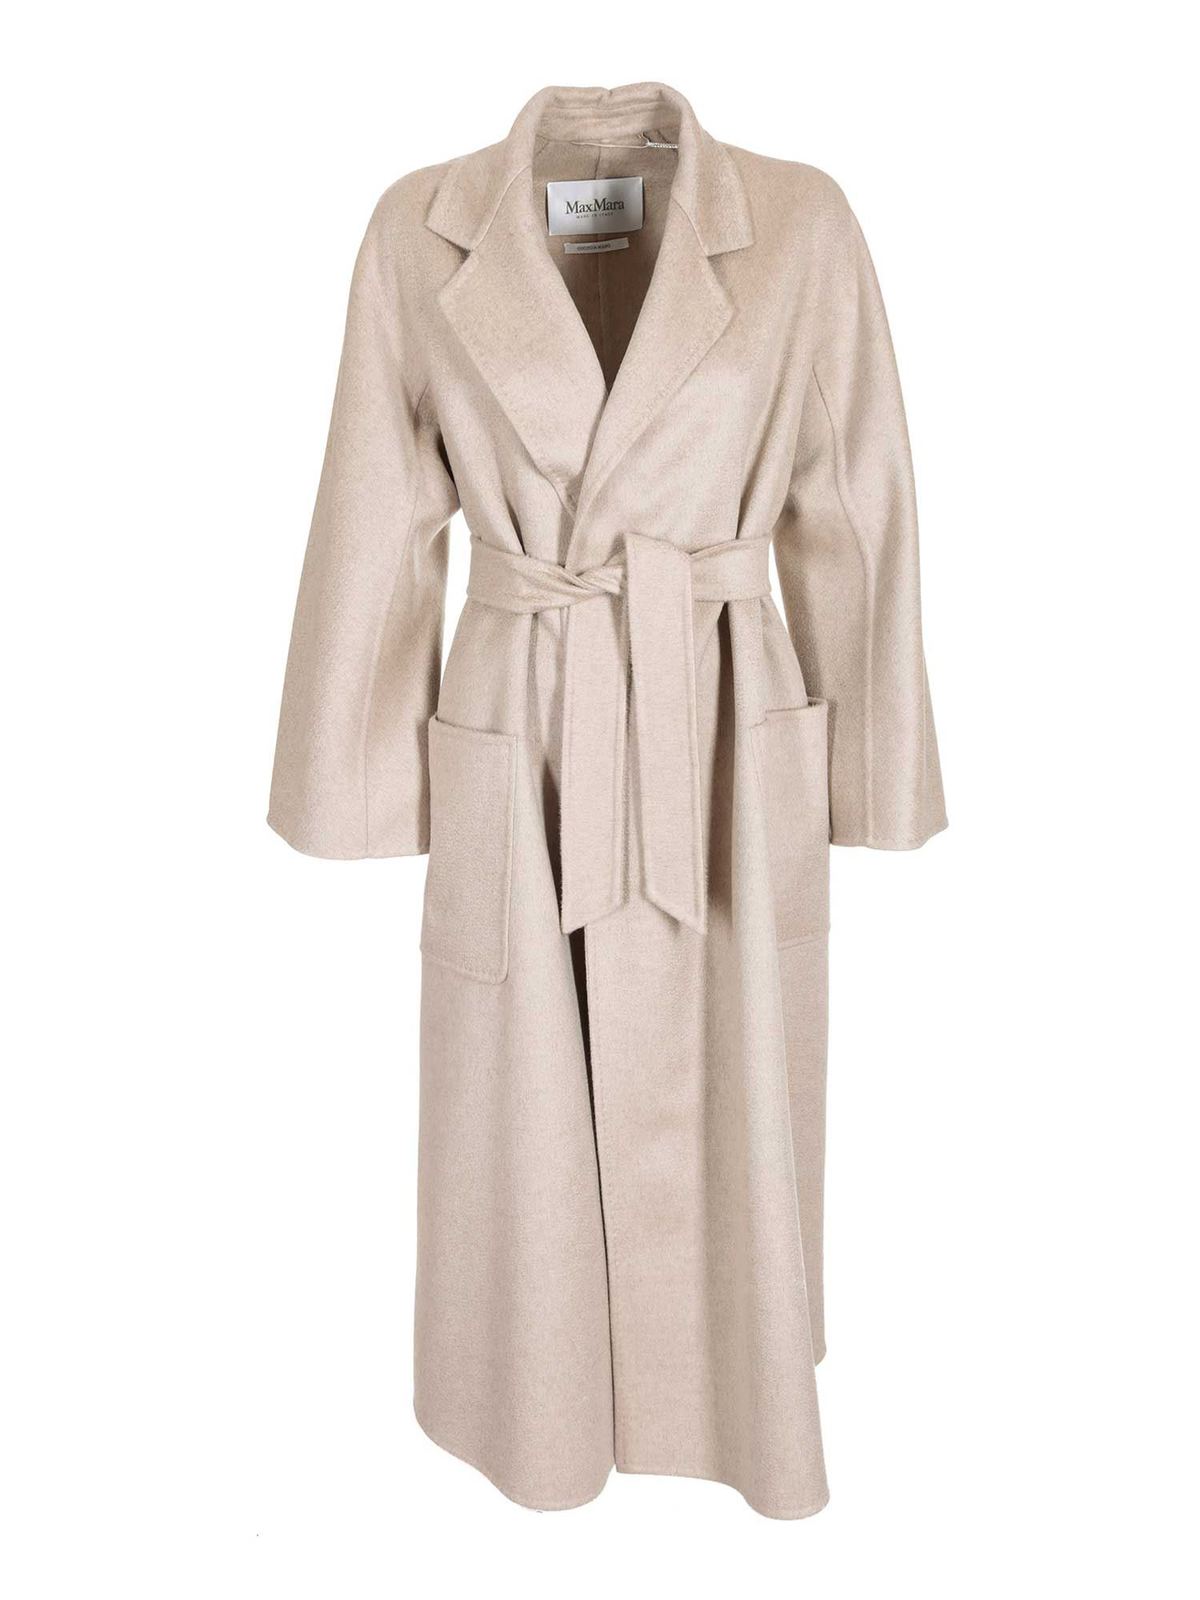 Max Mara - Labbro Coat in Cha Cha color - long coats - 10160909000032